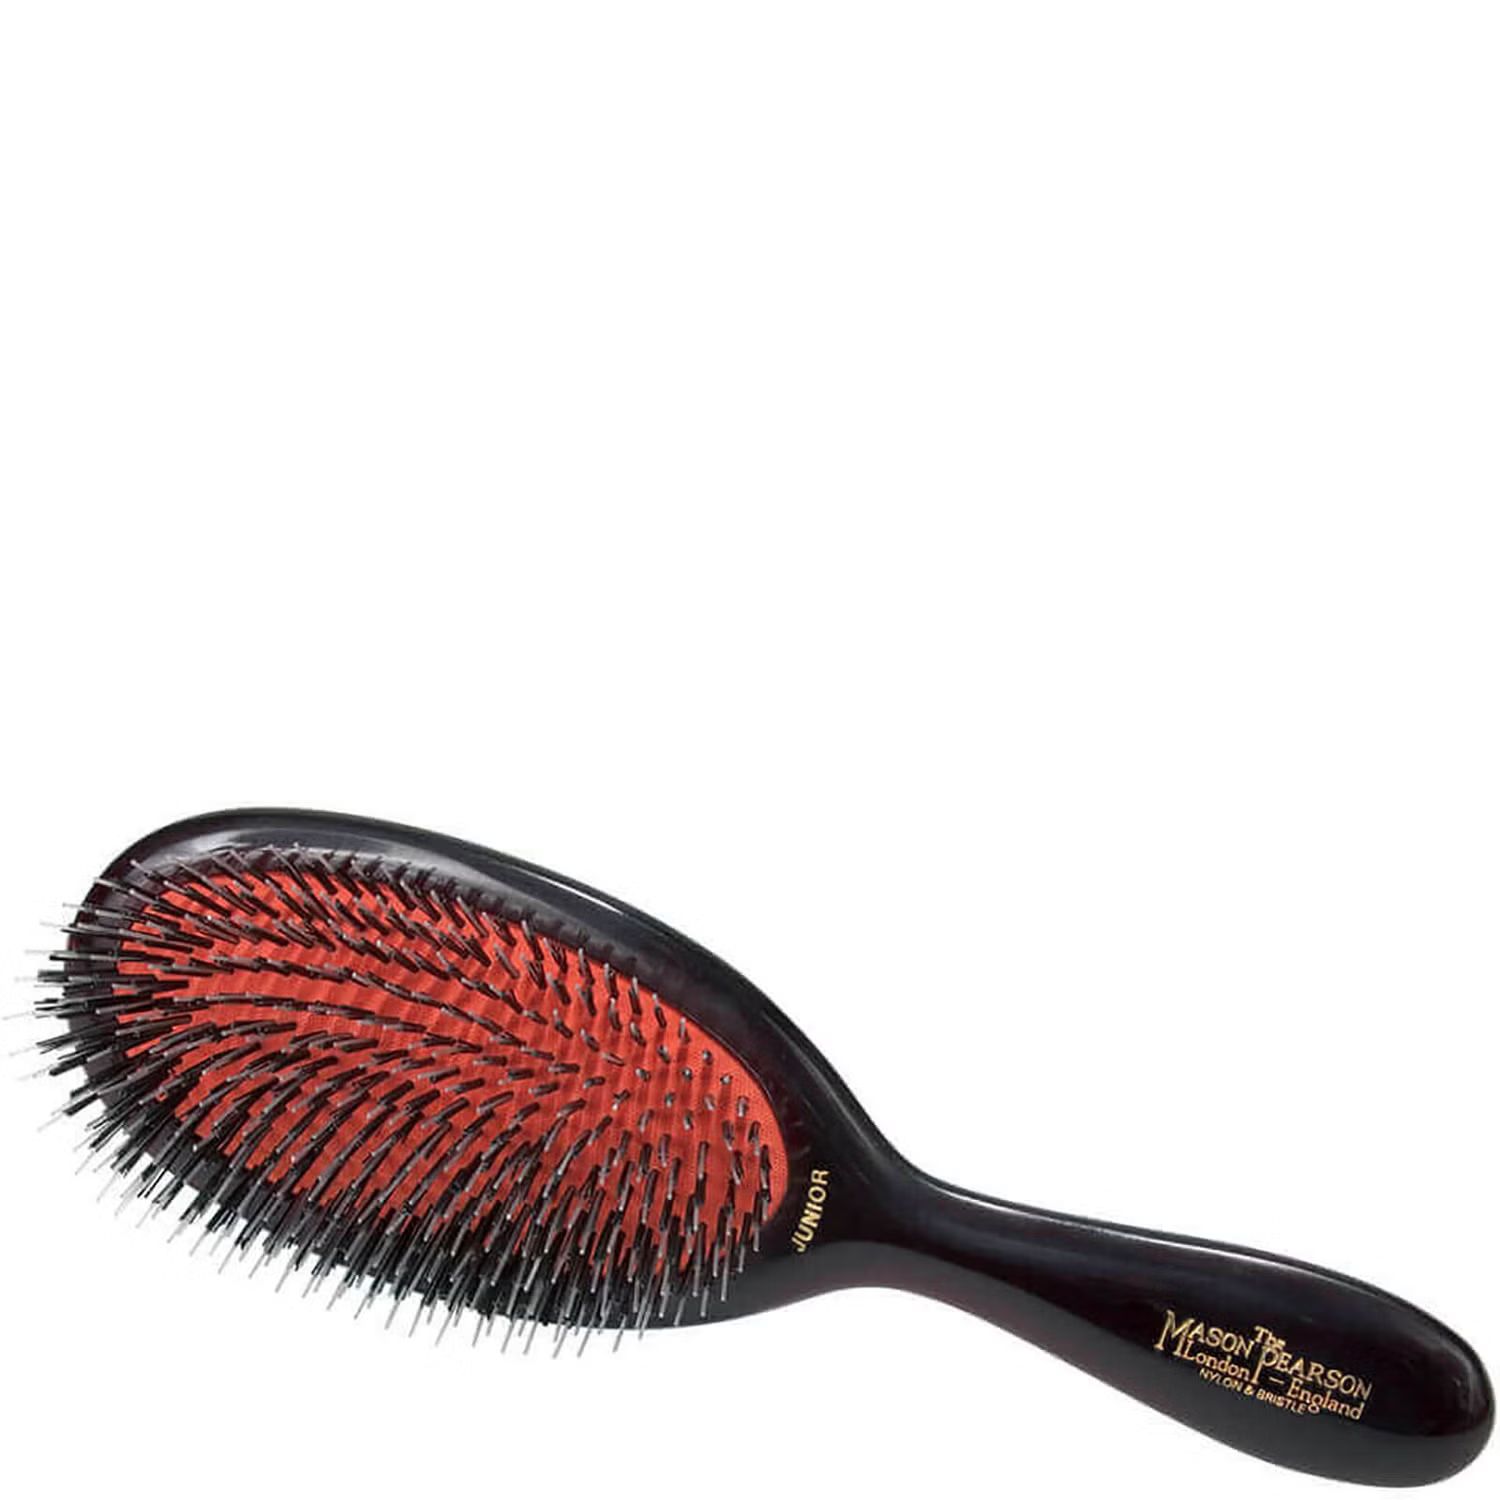 Mason Pearson Junior Mixture Hair Brush (1 piece) | Dermstore (US)